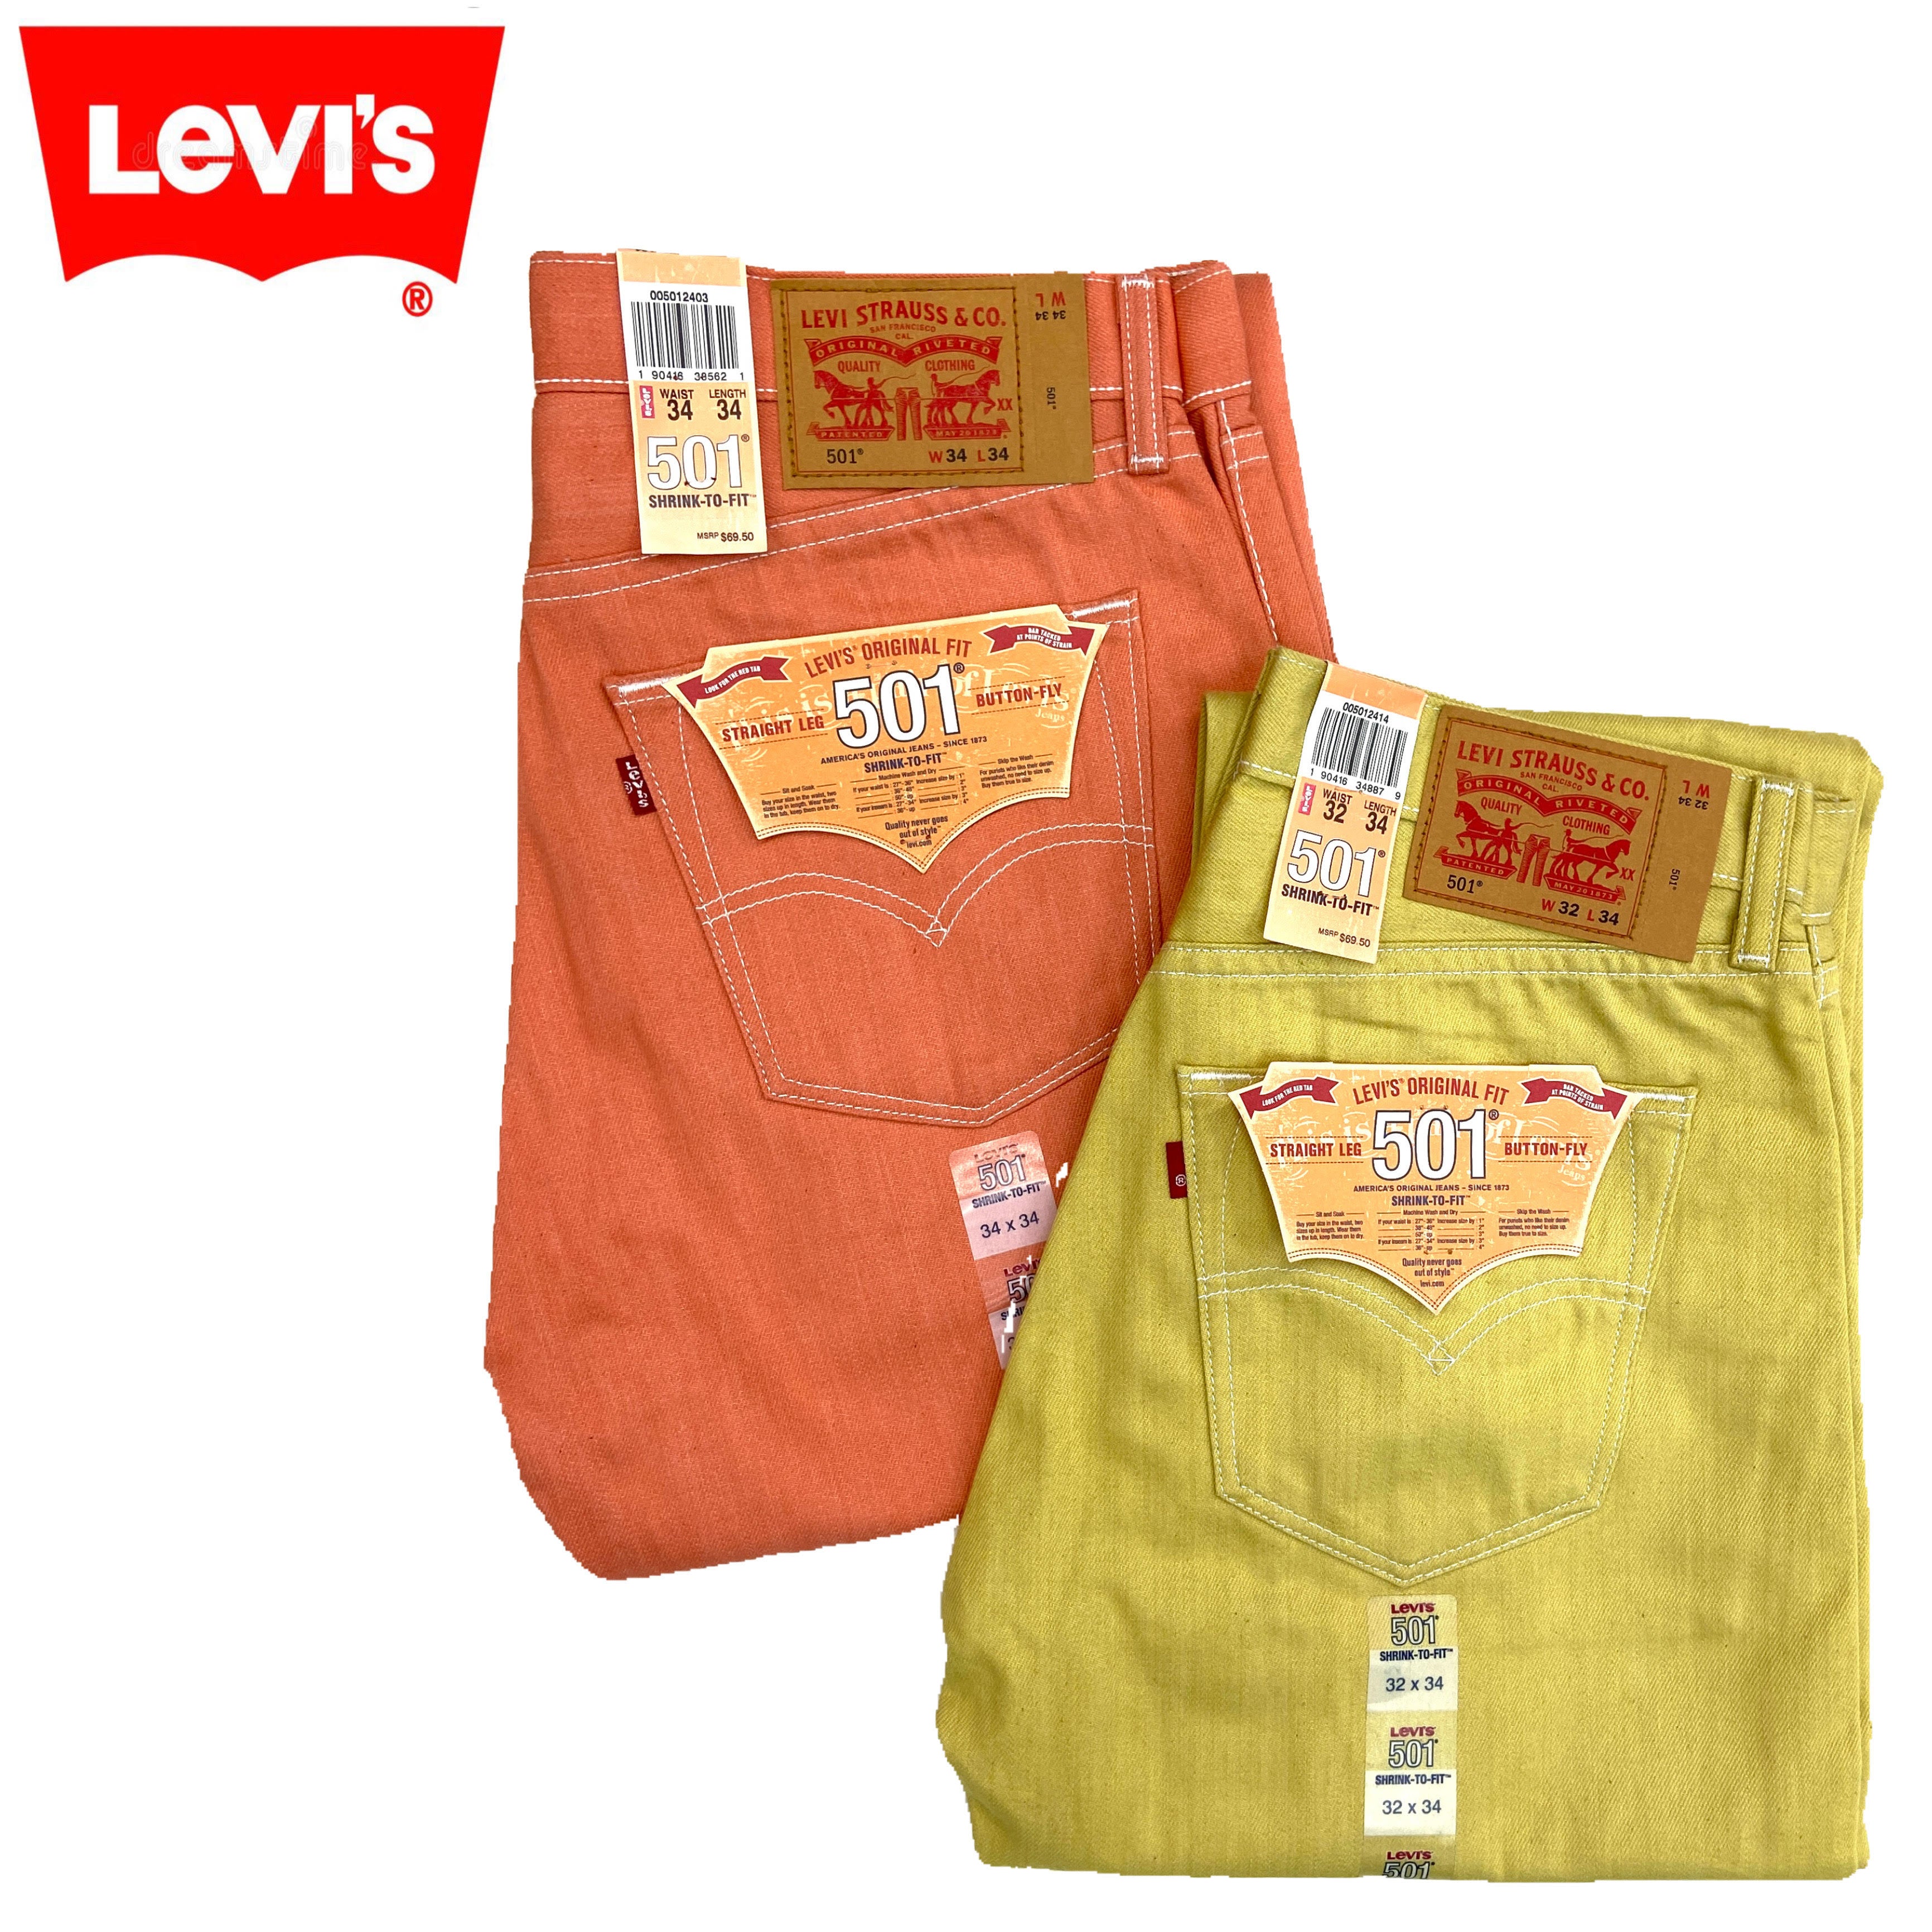 Levi's 501 Size 30 - 44